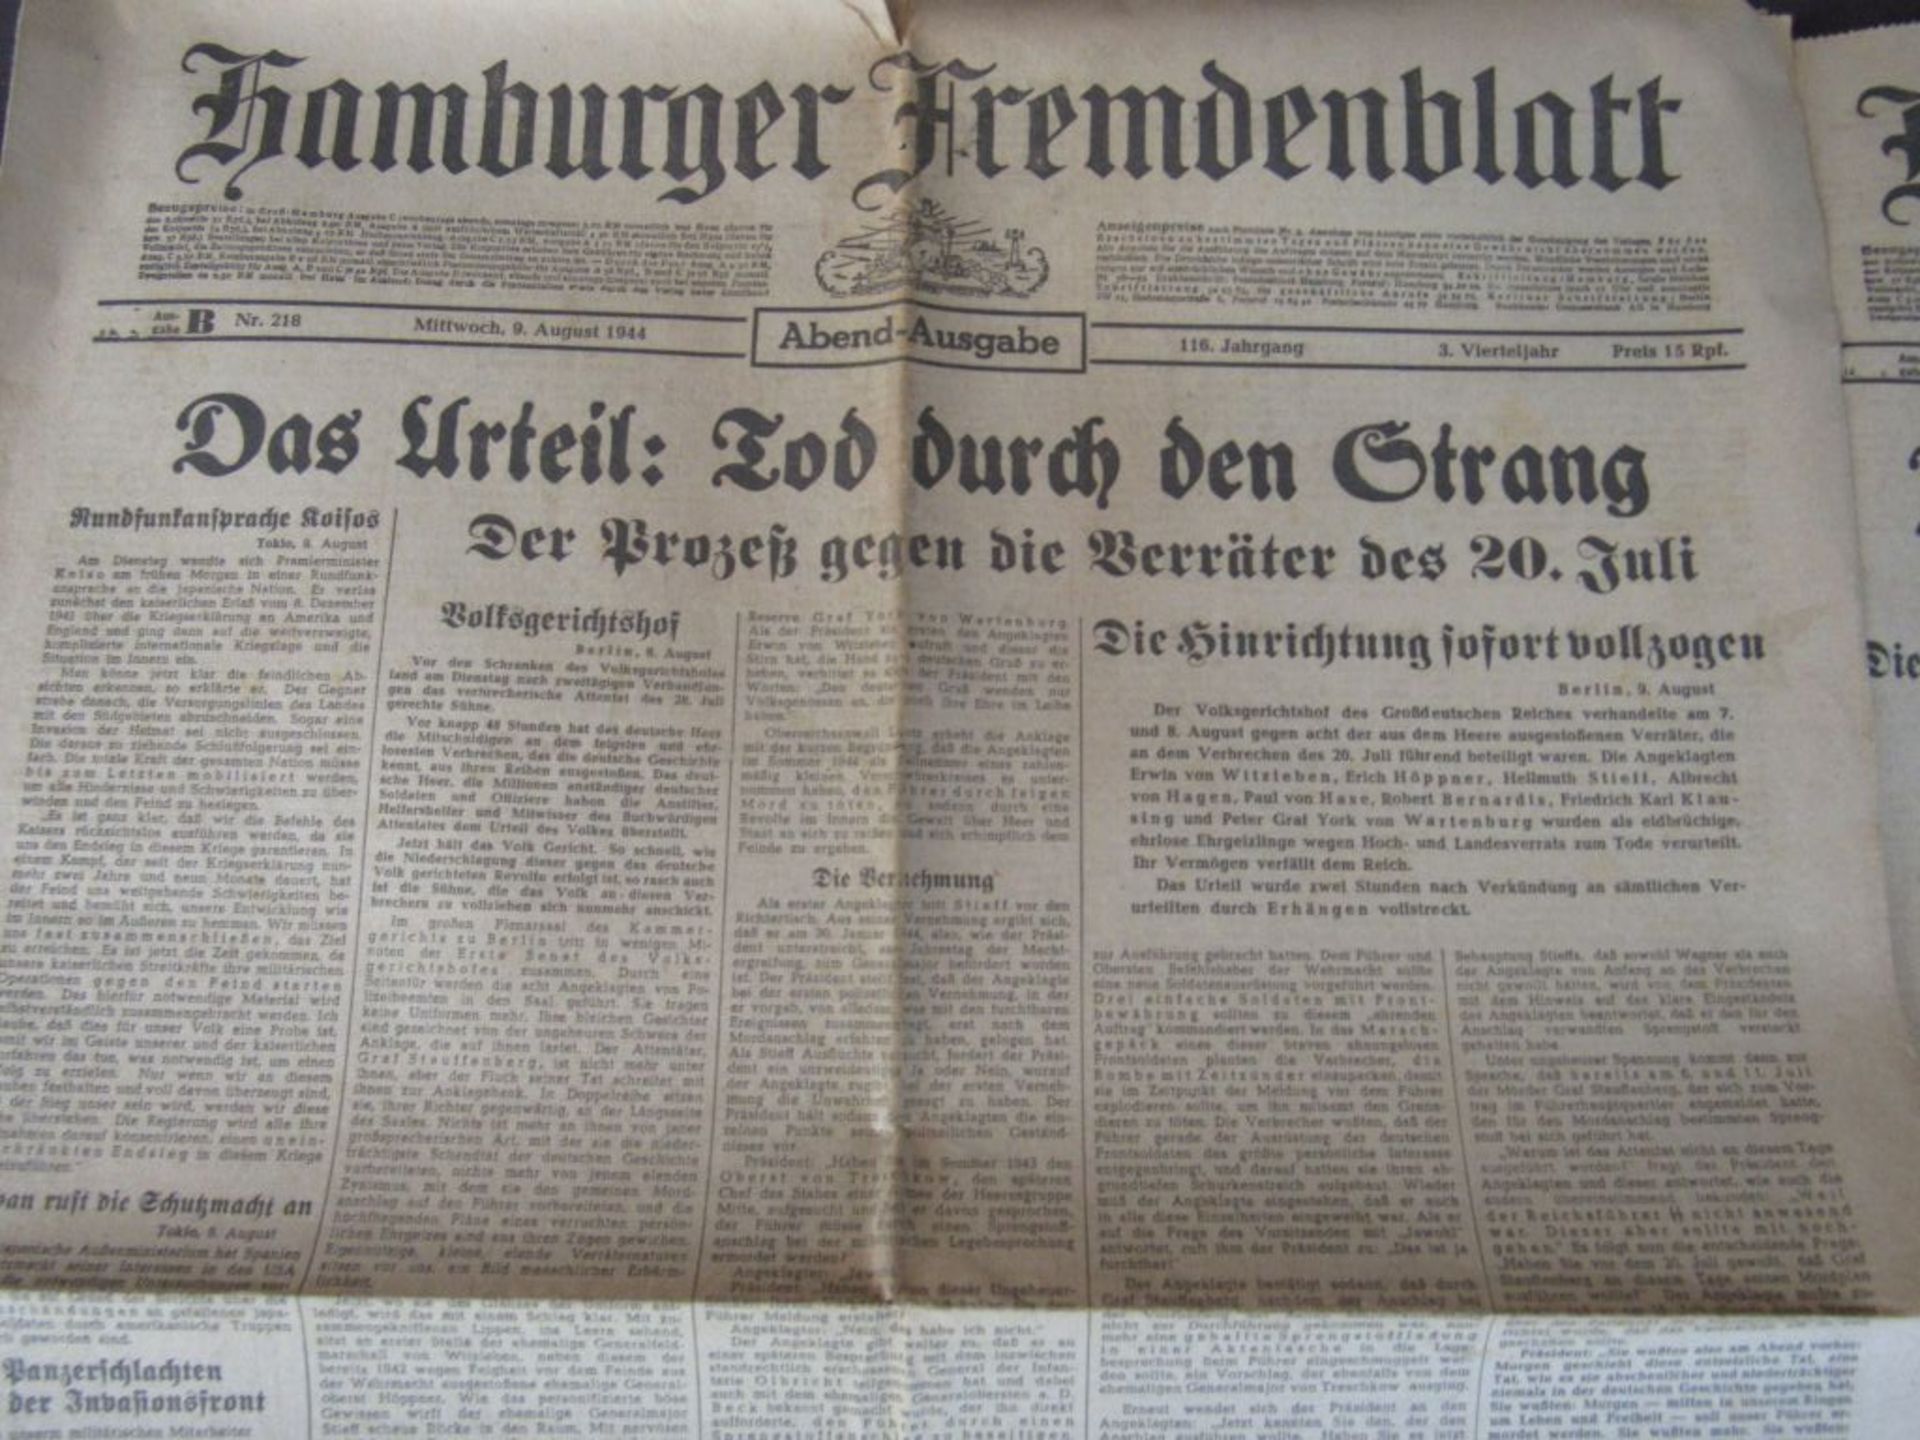 3.Reich Hamburger Fremdenblatt Zeitung - Image 2 of 12